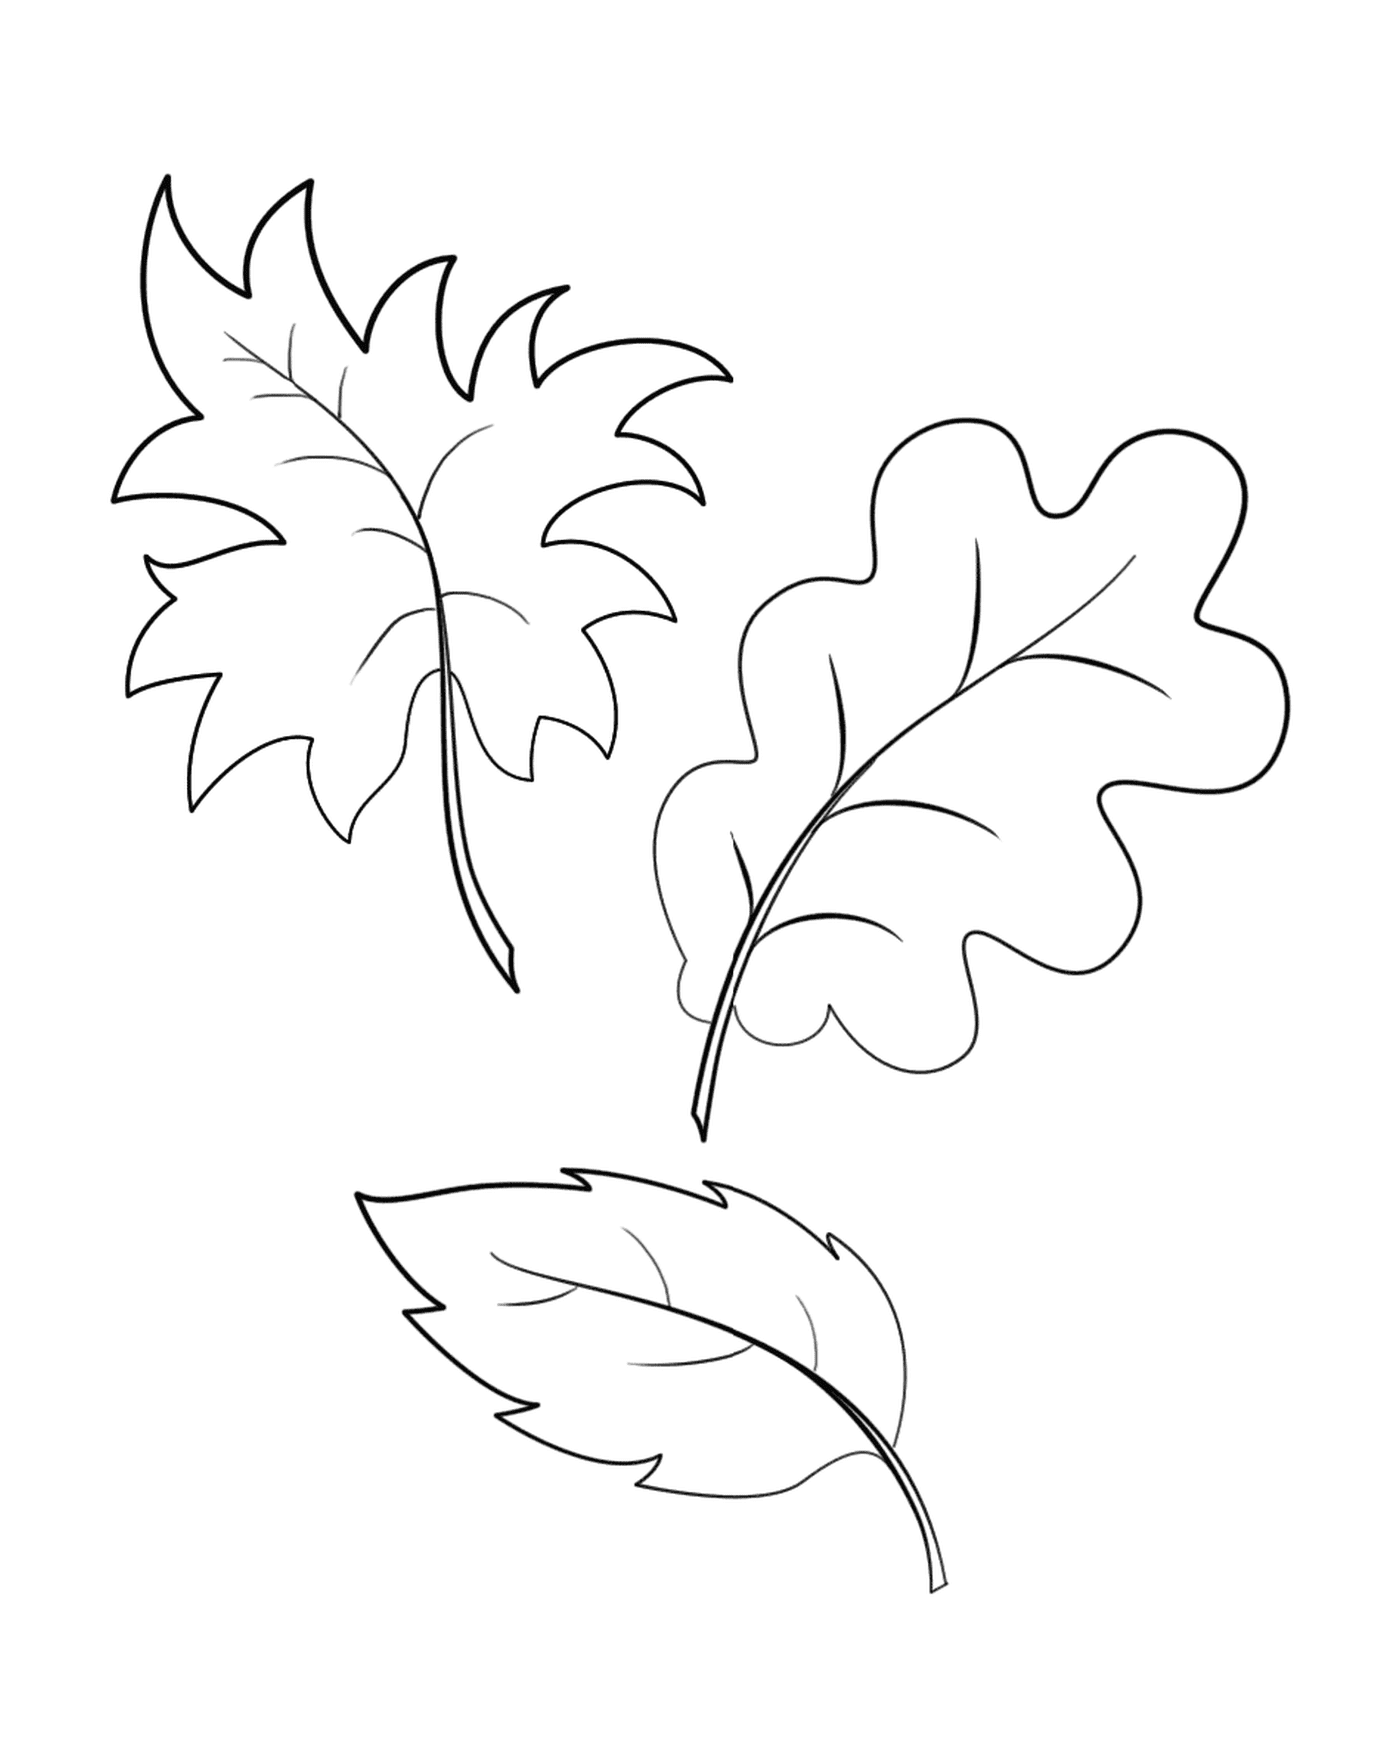  Drei gezeichnete Blätter 